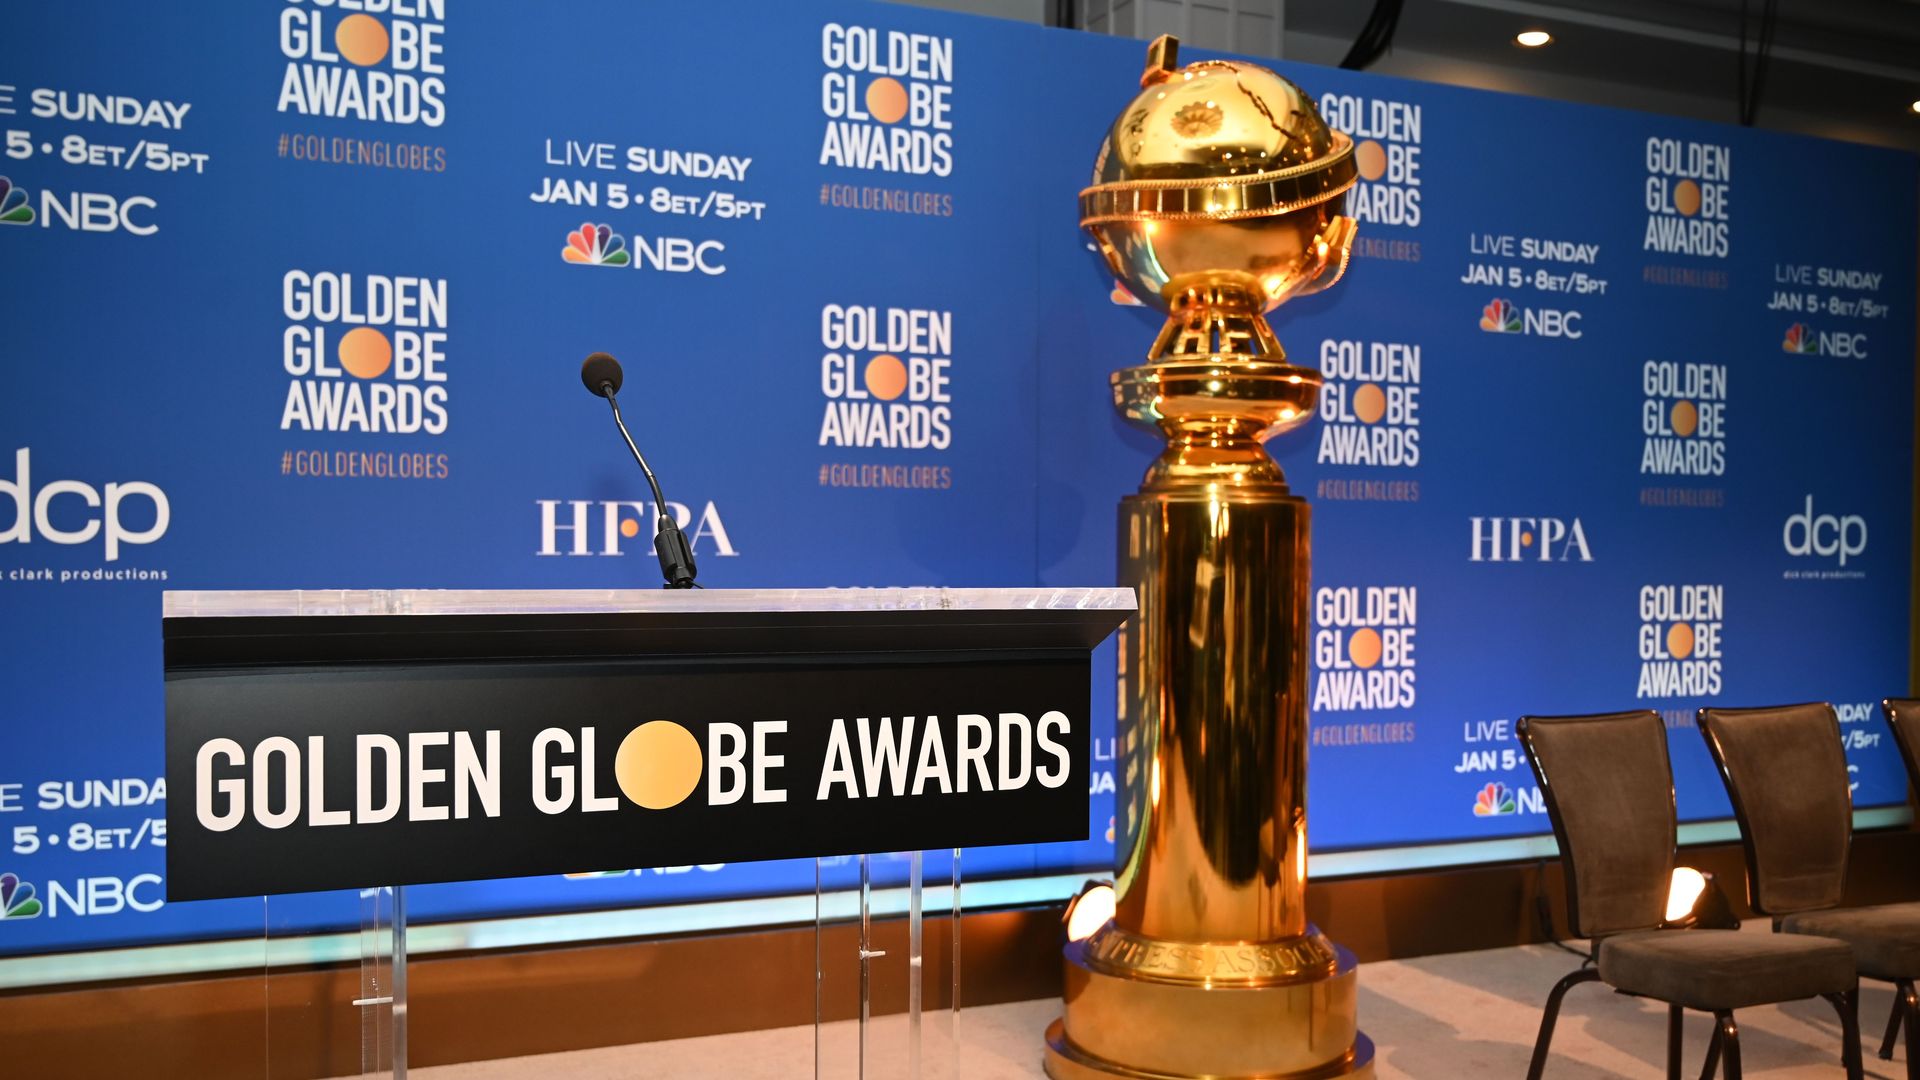 Golden Globe media stage set-up